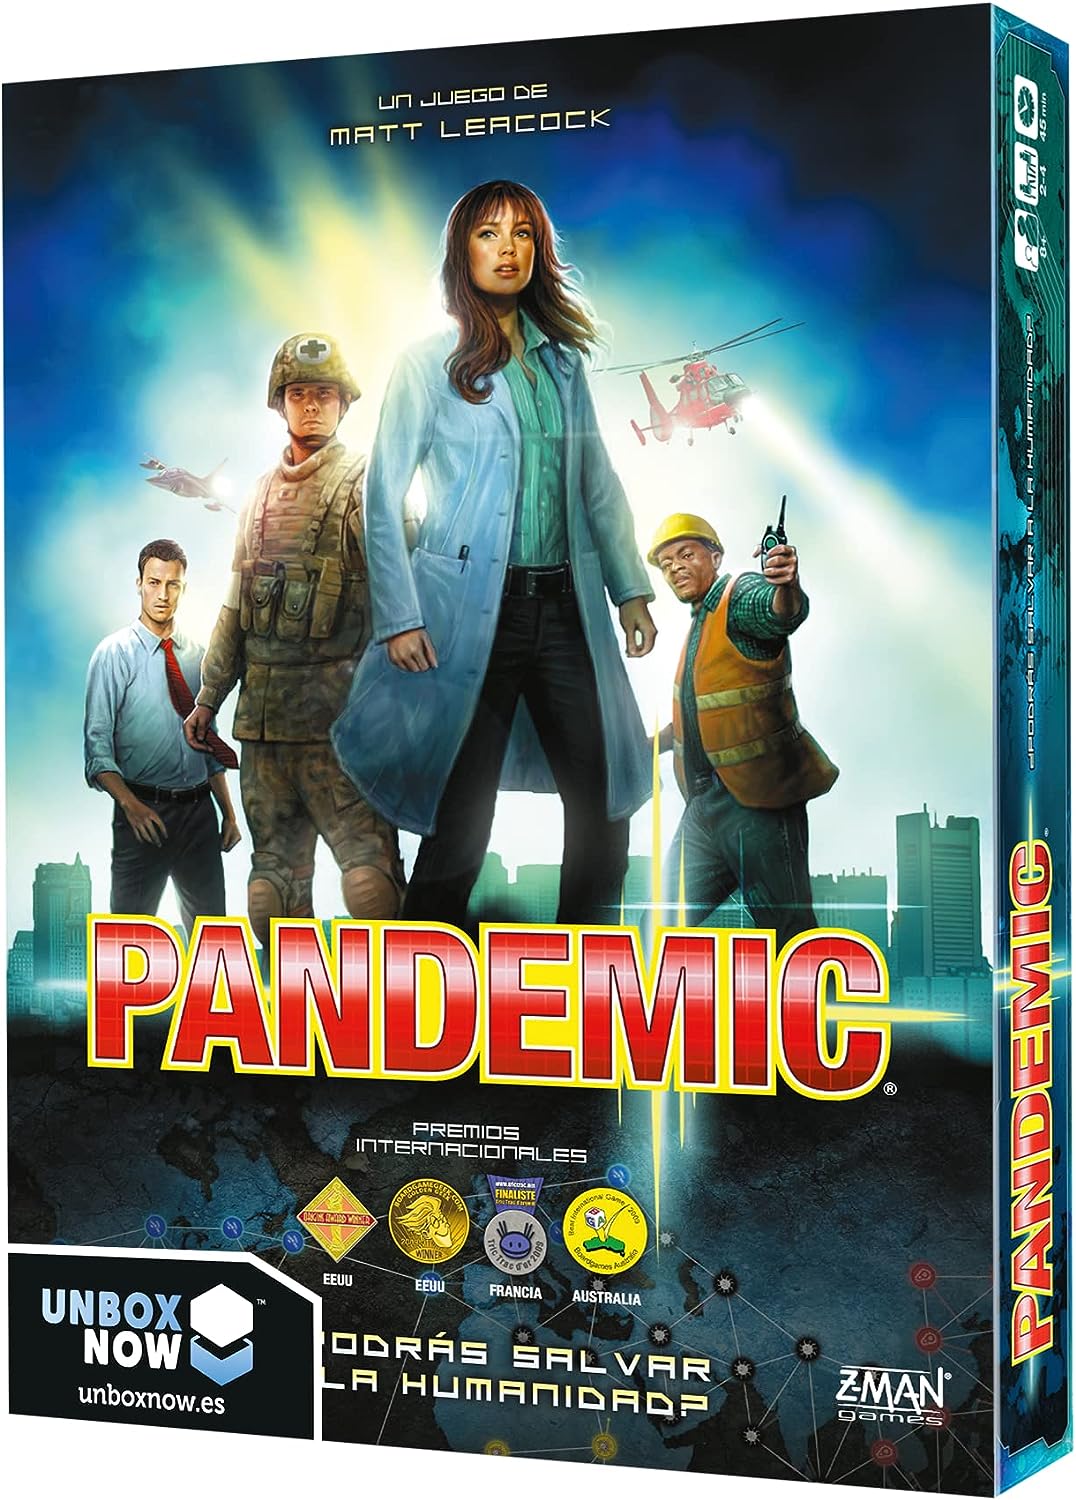 Jeu de société Pandémie - Thème Médecine - De 2 à 4 joueurs - A partir de 8 ans - Durée 45min. environ.